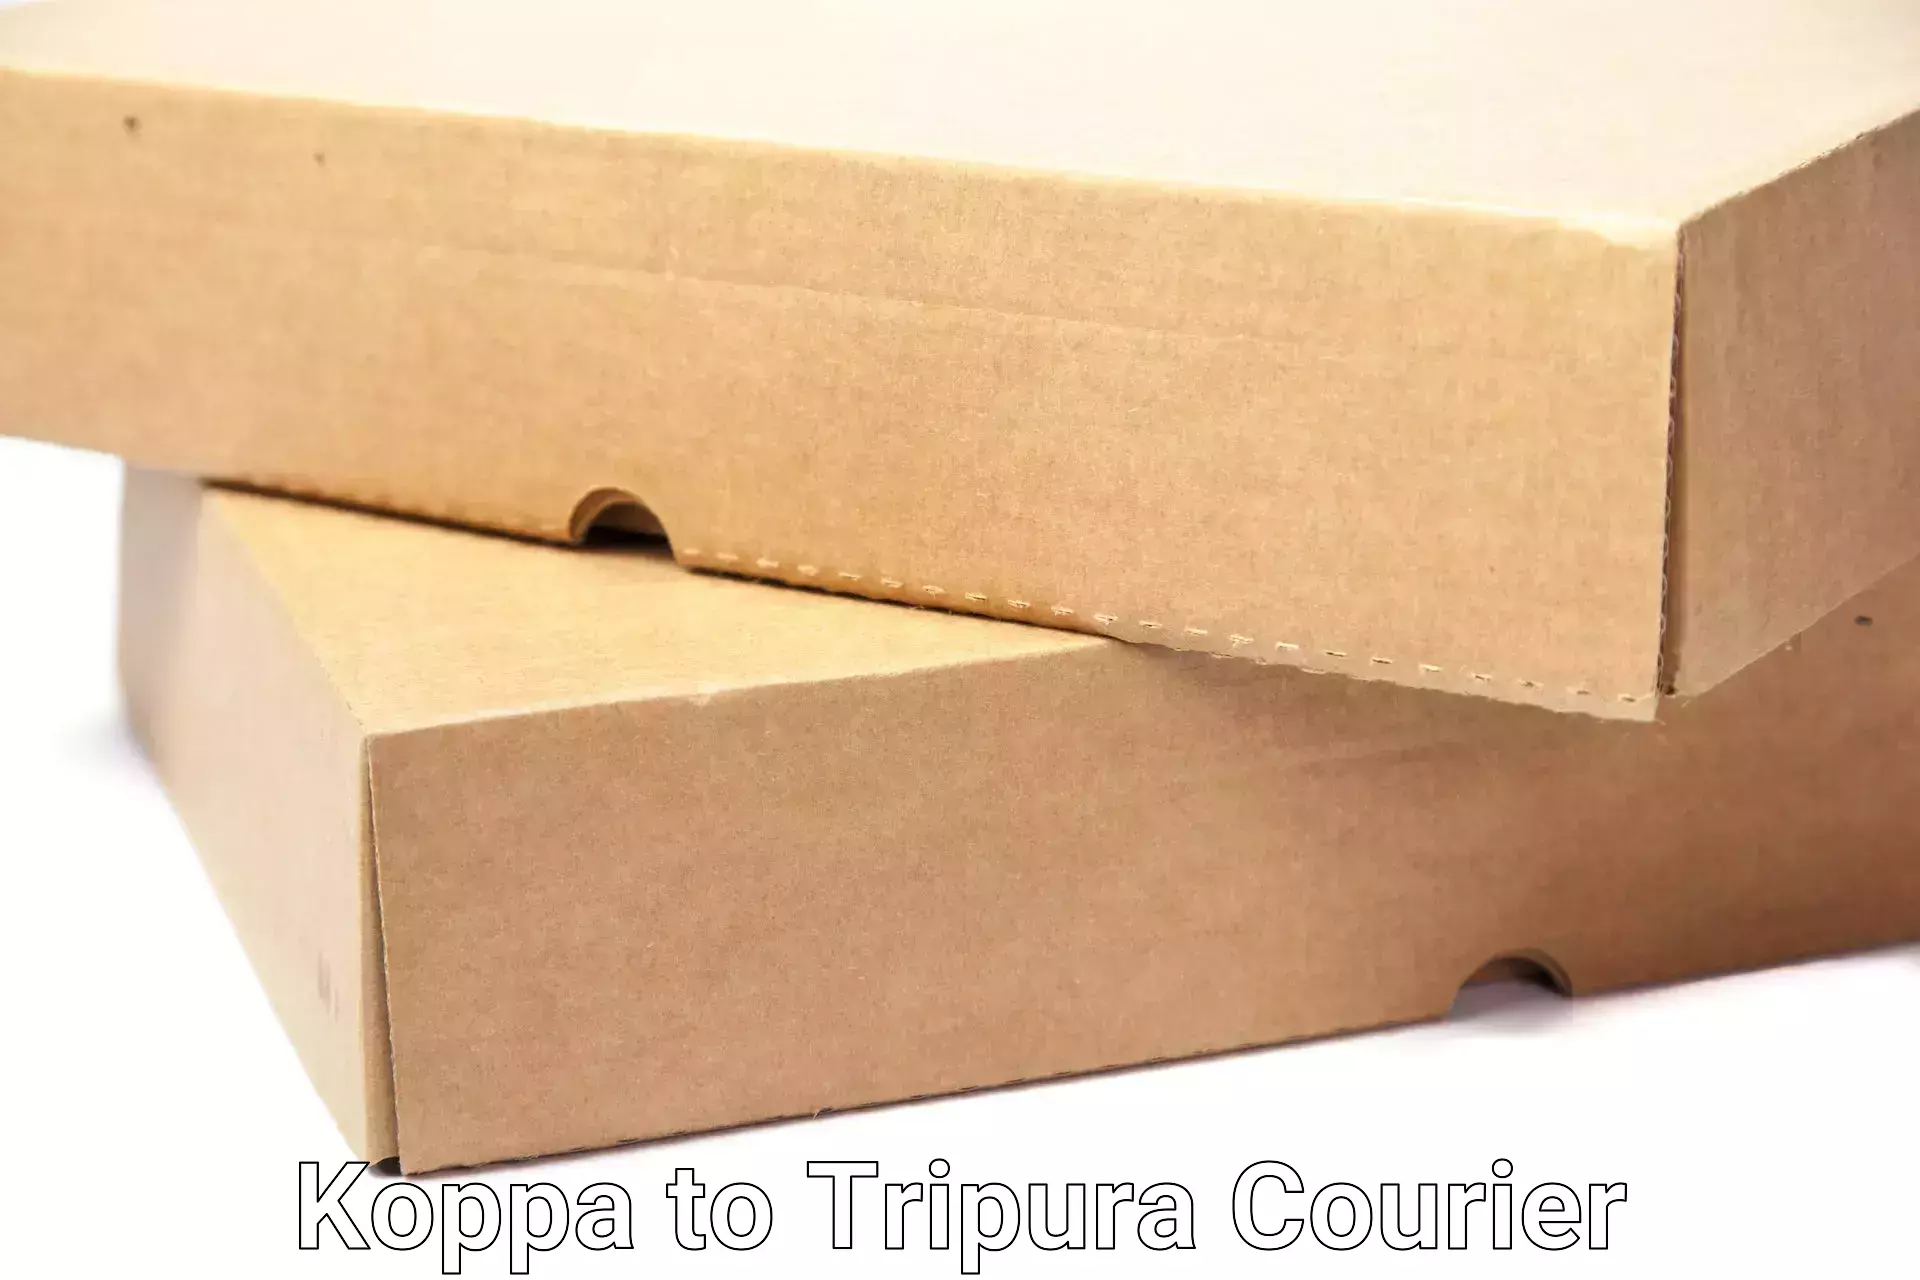 Premium moving services Koppa to Tripura